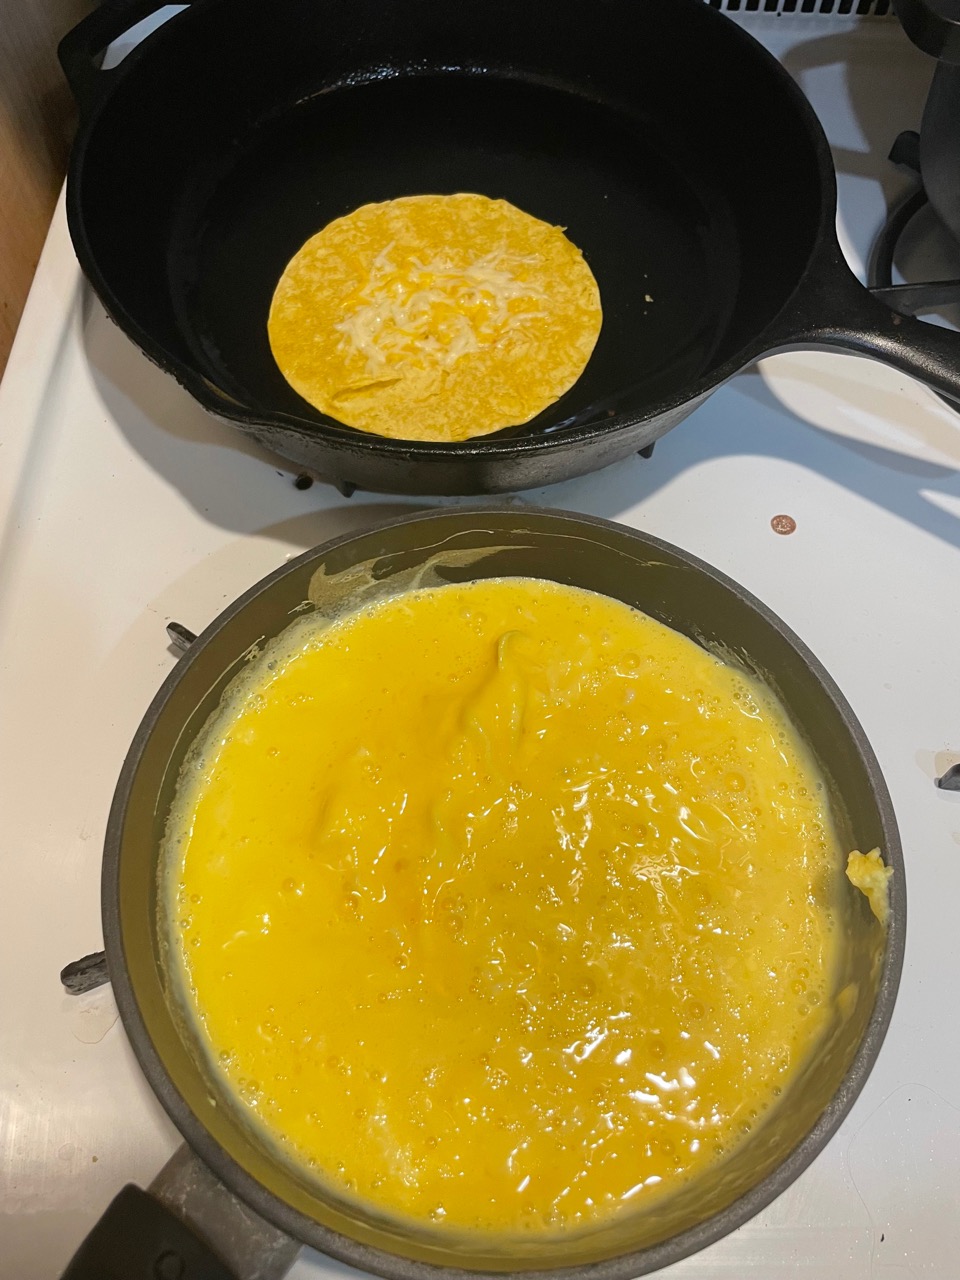 scrambling eggs and warming up tortillas, pan shot